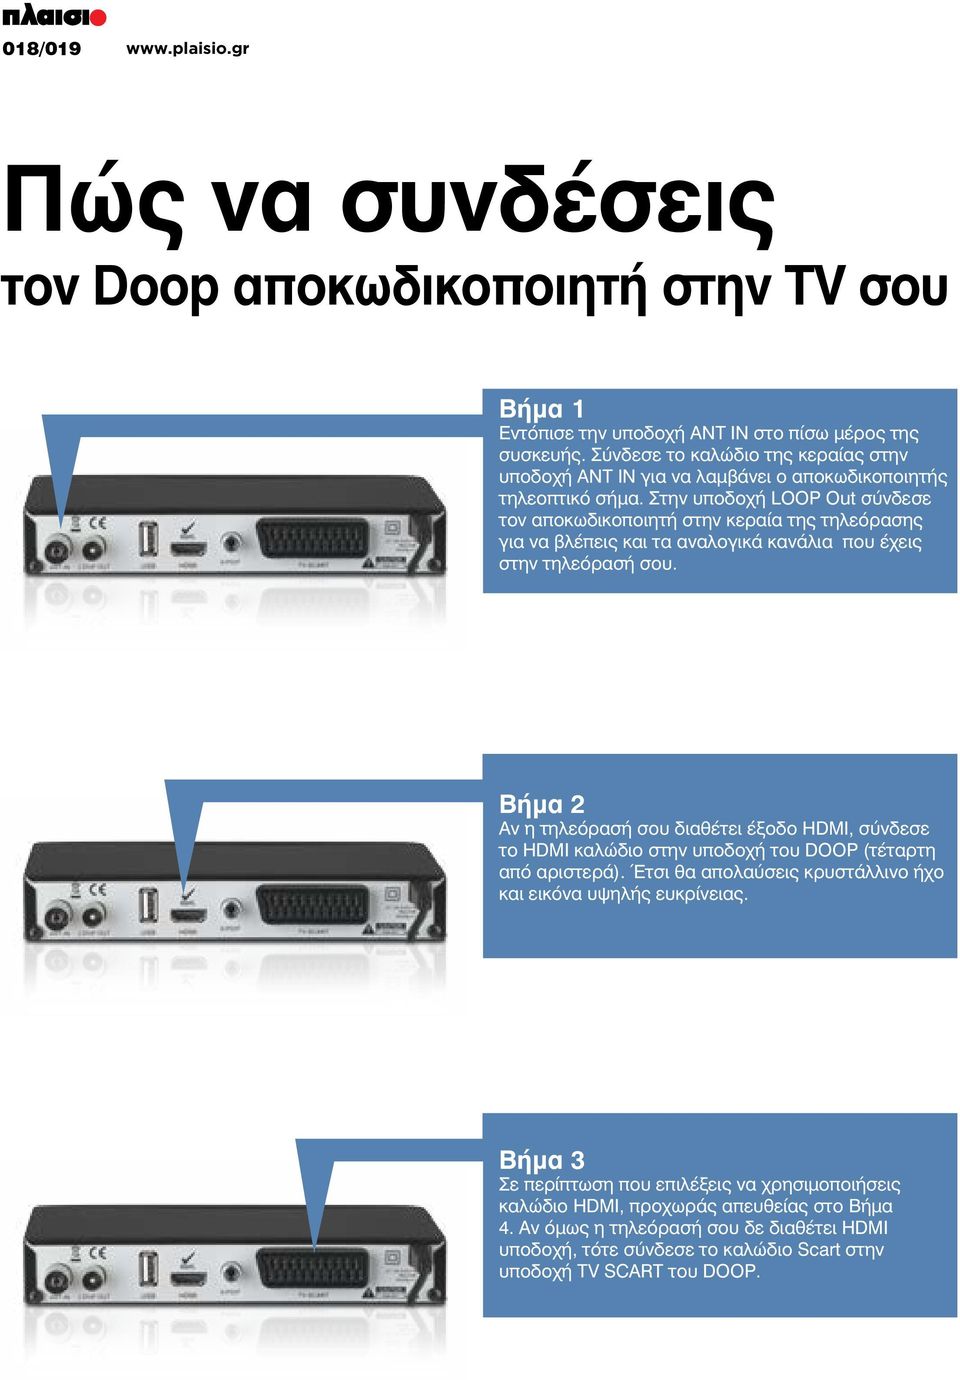 Στην υποδοχή LOOP Out σύνδεσε τον αποκωδικοποιητή στην κεραία της τηλεόρασης για να βλέπεις και τα αναλογικά κανάλια που έχεις στην τηλεόρασή σου.